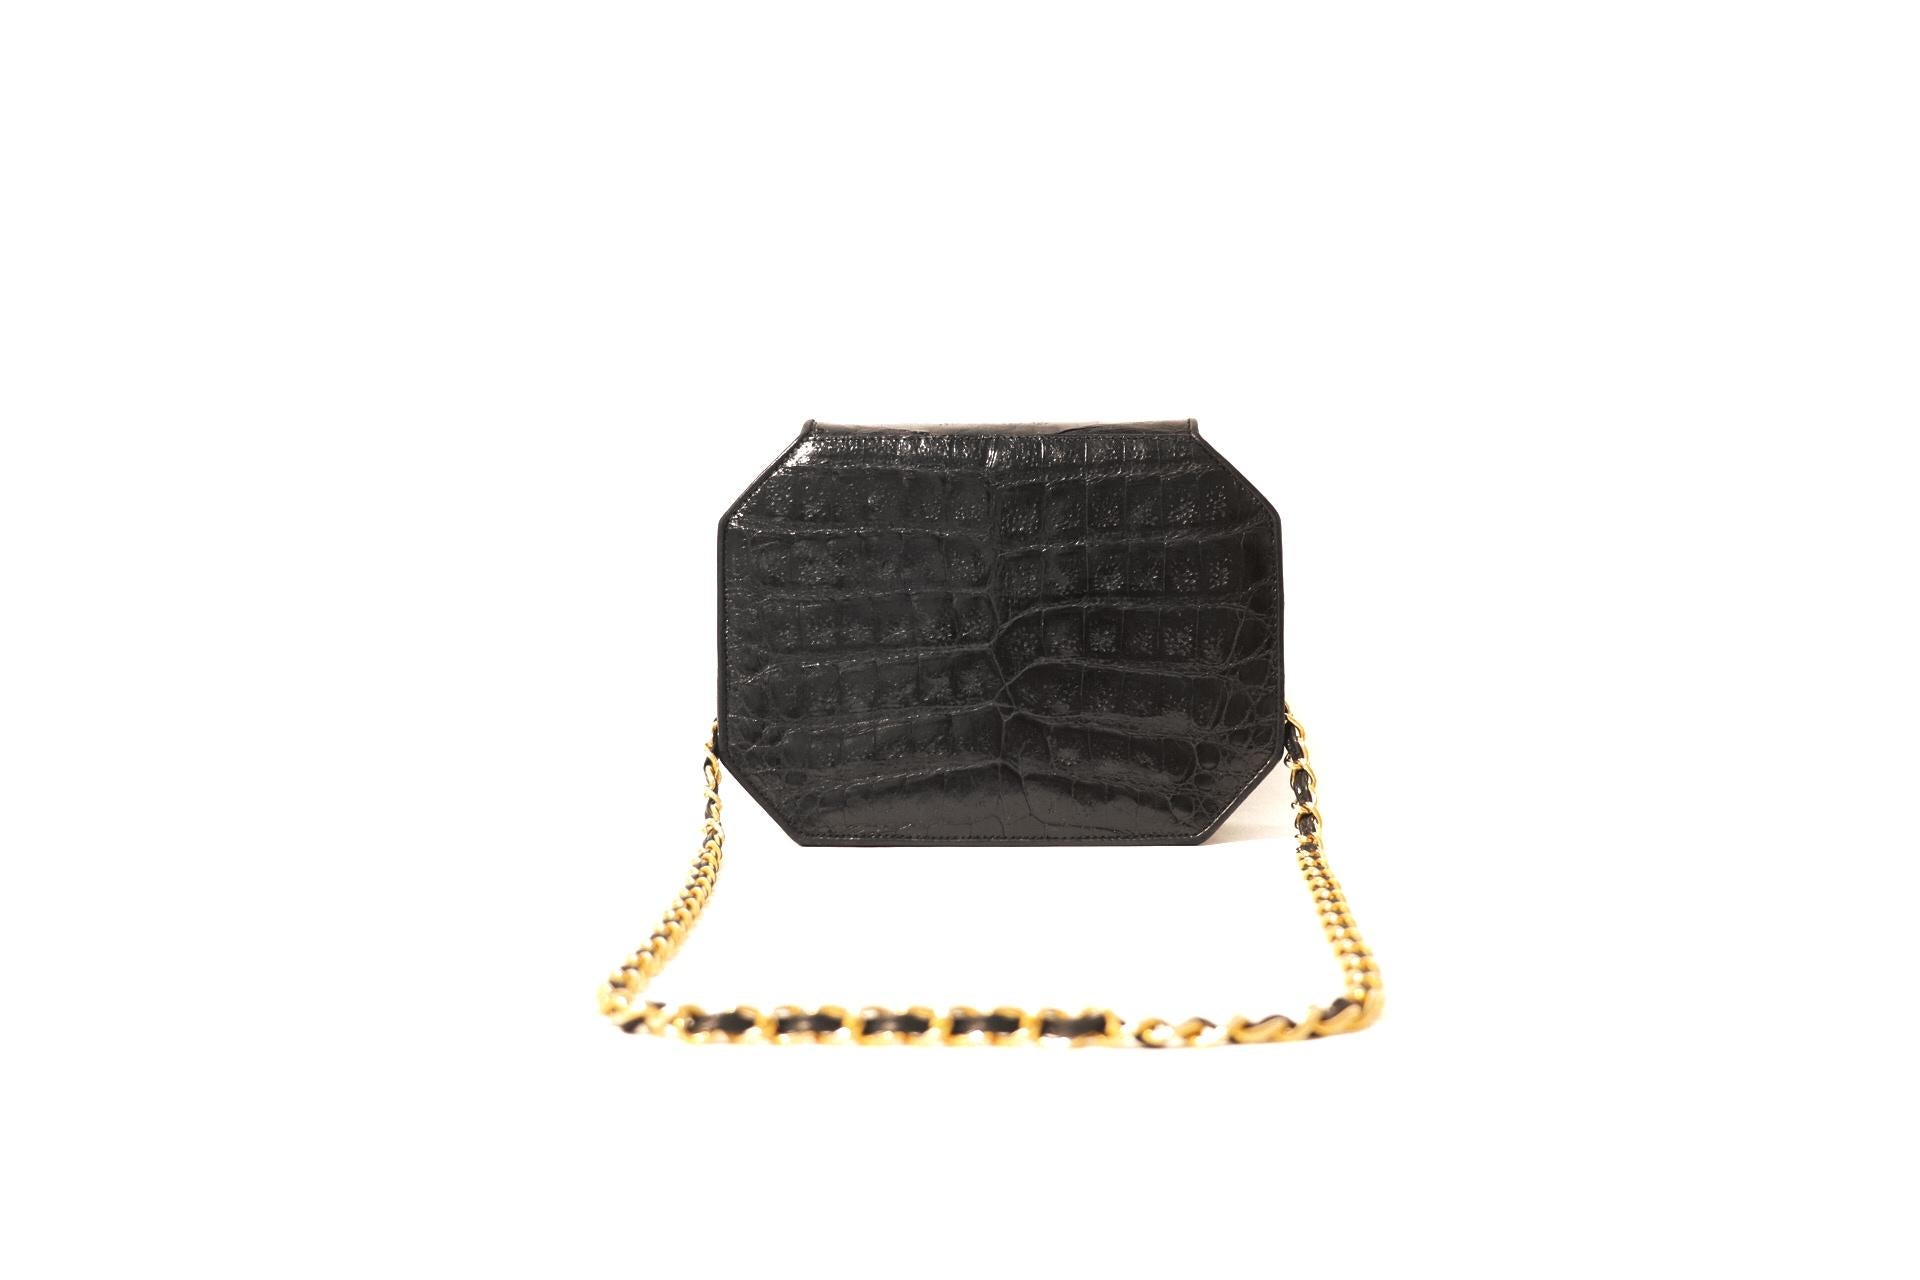 Cet authentique sac octogonal en crocodile noir de Chanel est en excellent état.  Un style vintage rare:: c'est une belle addition à toute collection. 
La peau de crocodile noire et lisse est structurée en une forme à huit côtés.  Le rabat avant est